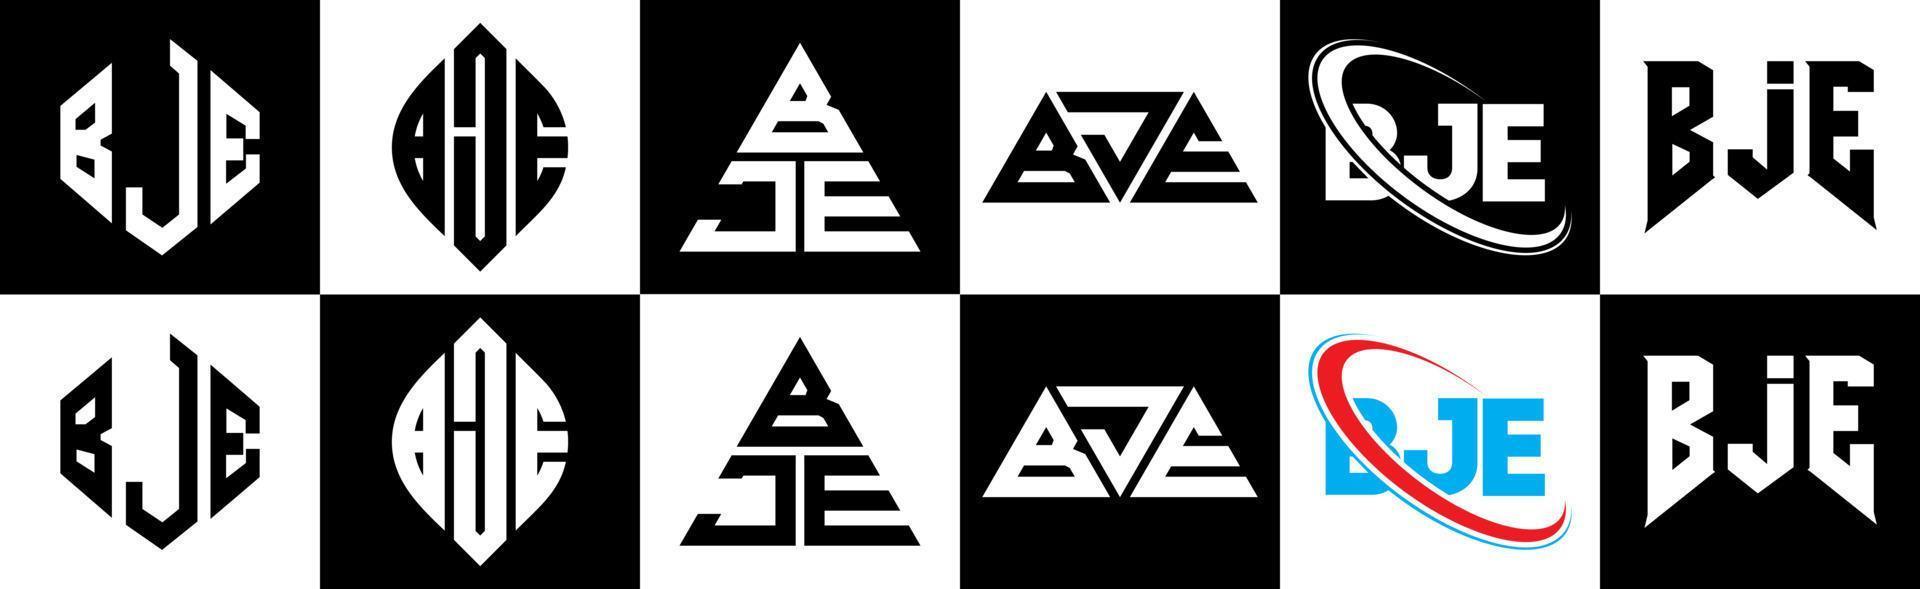 bje-Buchstaben-Logo-Design in sechs Stilen. bje polygon, kreis, dreieck, sechseck, flacher und einfacher stil mit schwarz-weißem buchstabenlogo in einer zeichenfläche. bje minimalistisches und klassisches Logo vektor